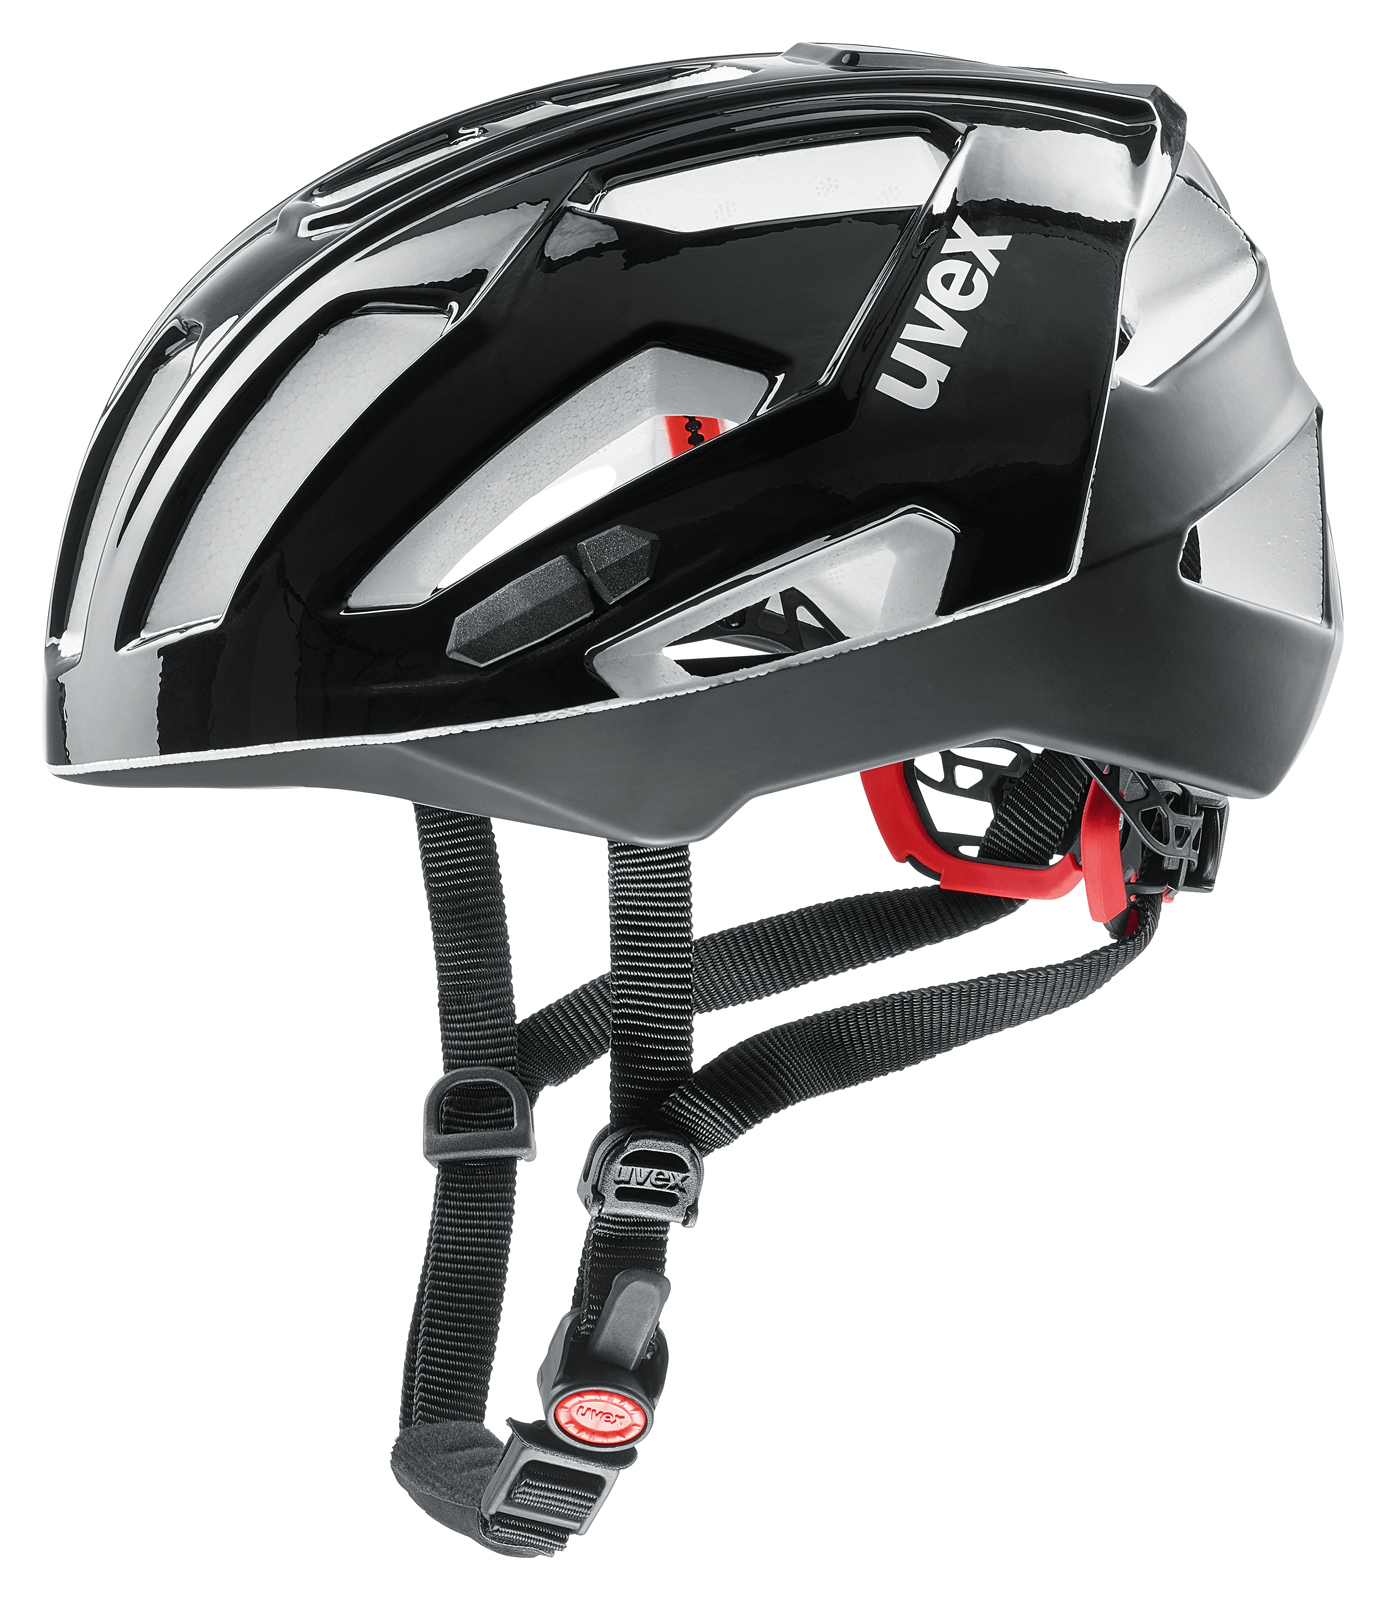 Uvex Quatro XC Rennrad Fahrrad Helm schwarz 2018 von Top